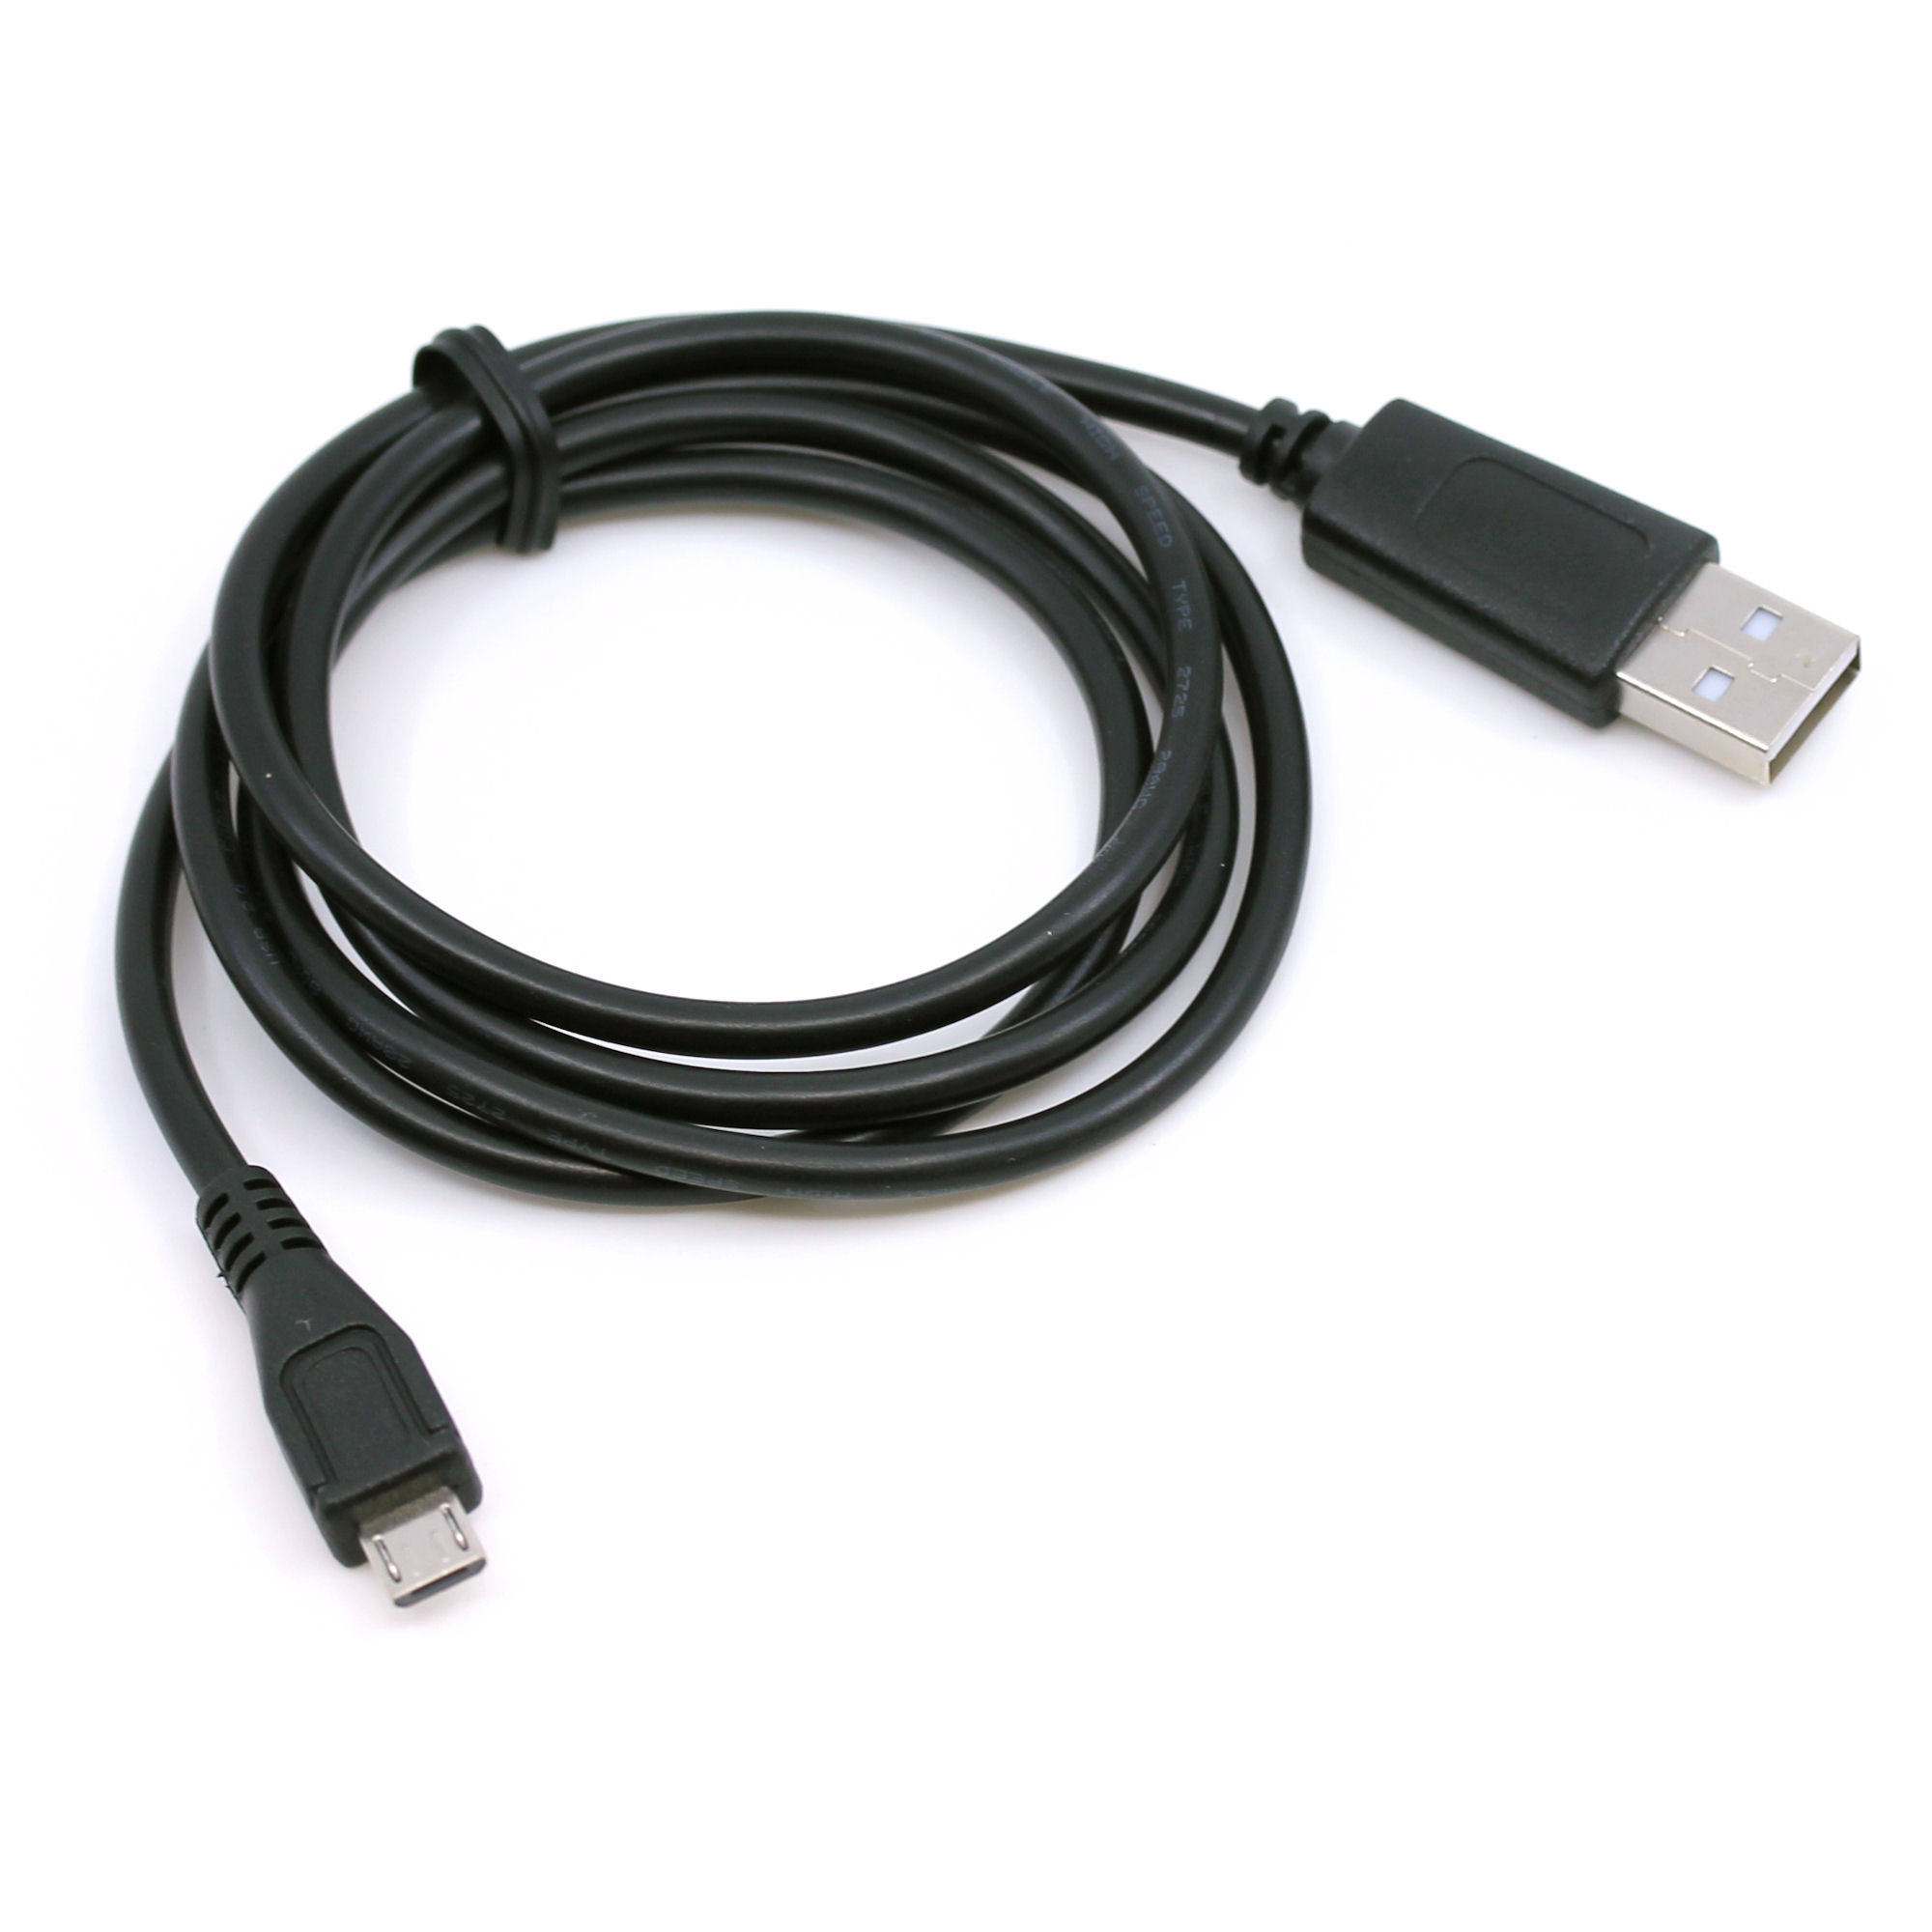 USB Ladekabel für Sony SRS-XB01, SRS-XB12, SRS-XB21, SRS-XB22, SRS-XB31, SRS-XB32, SRS-XB41